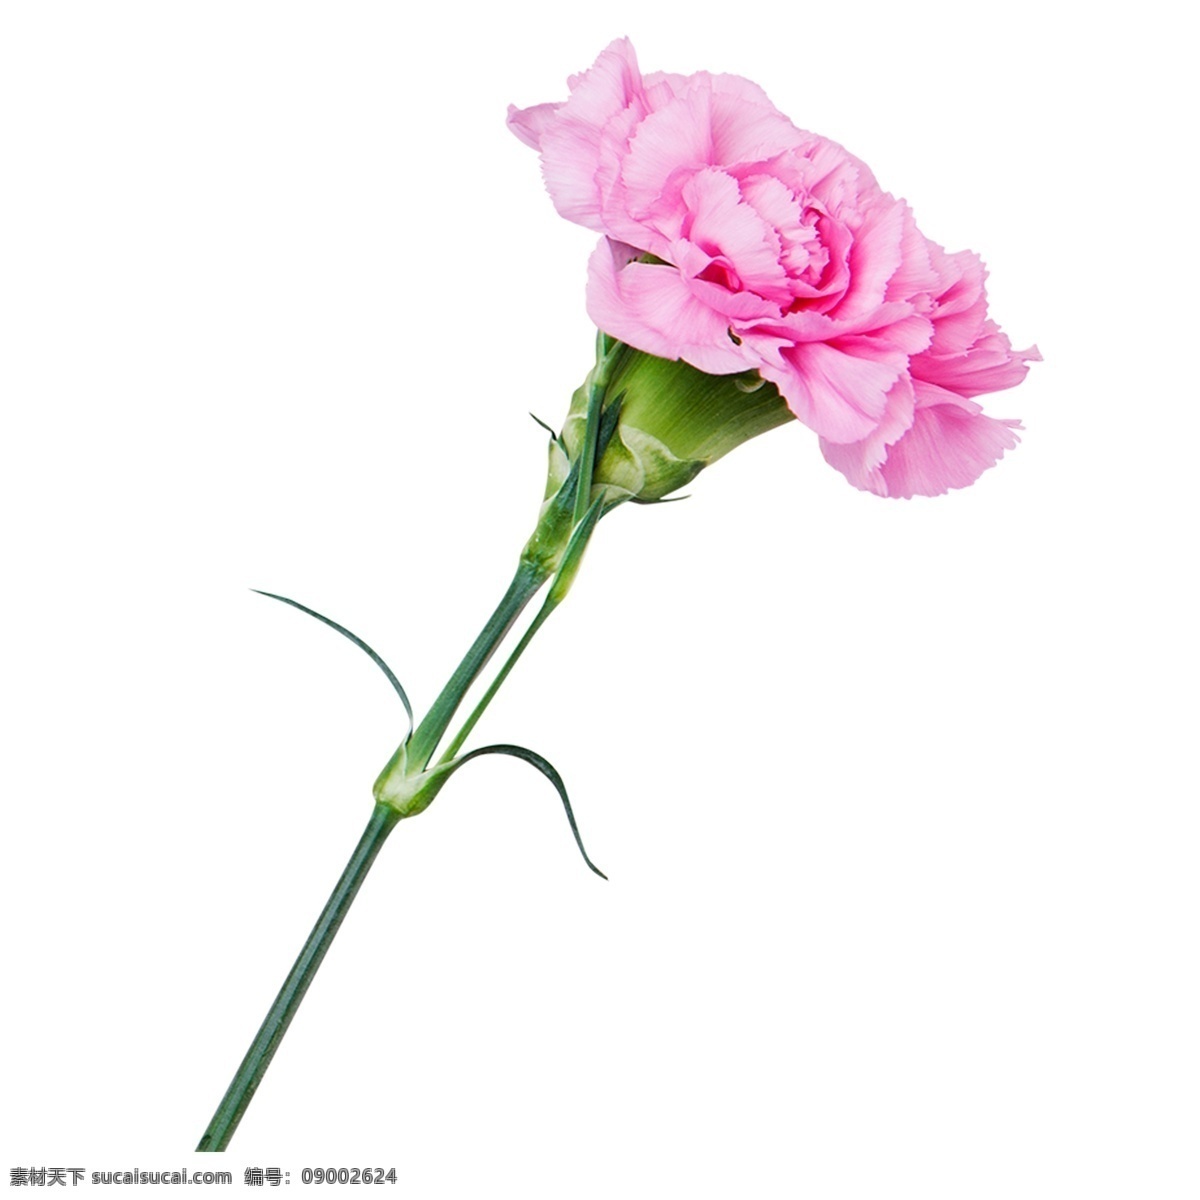 粉红色 康乃馨 漂亮 花朵 装饰素材